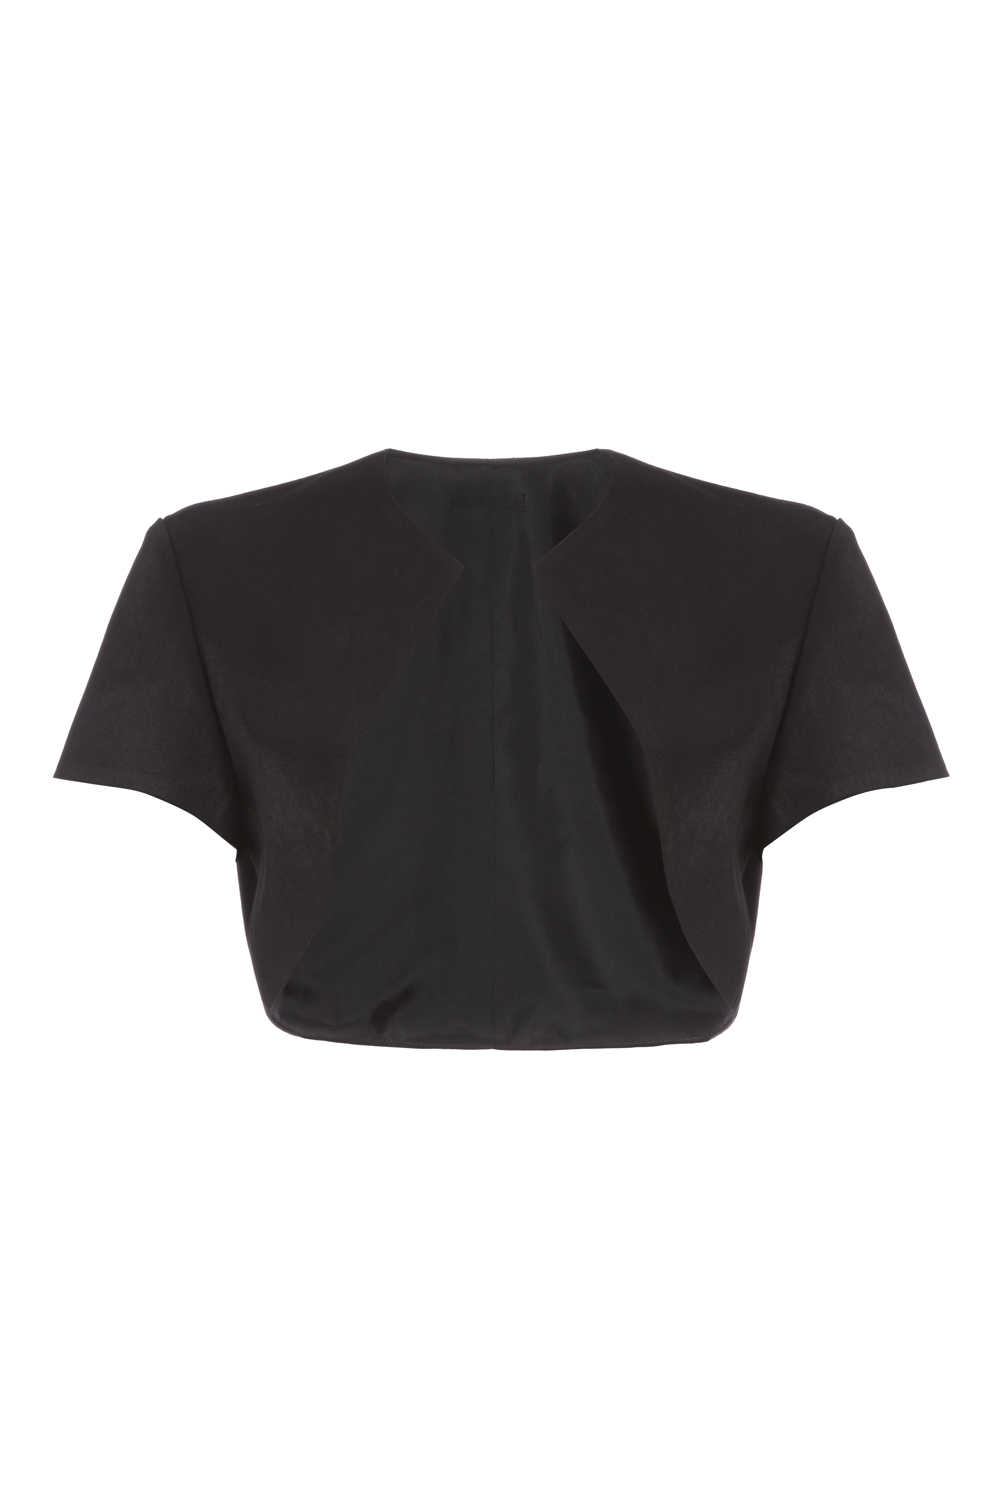 Black Short Sleeve Bolero, Image 3 of 5